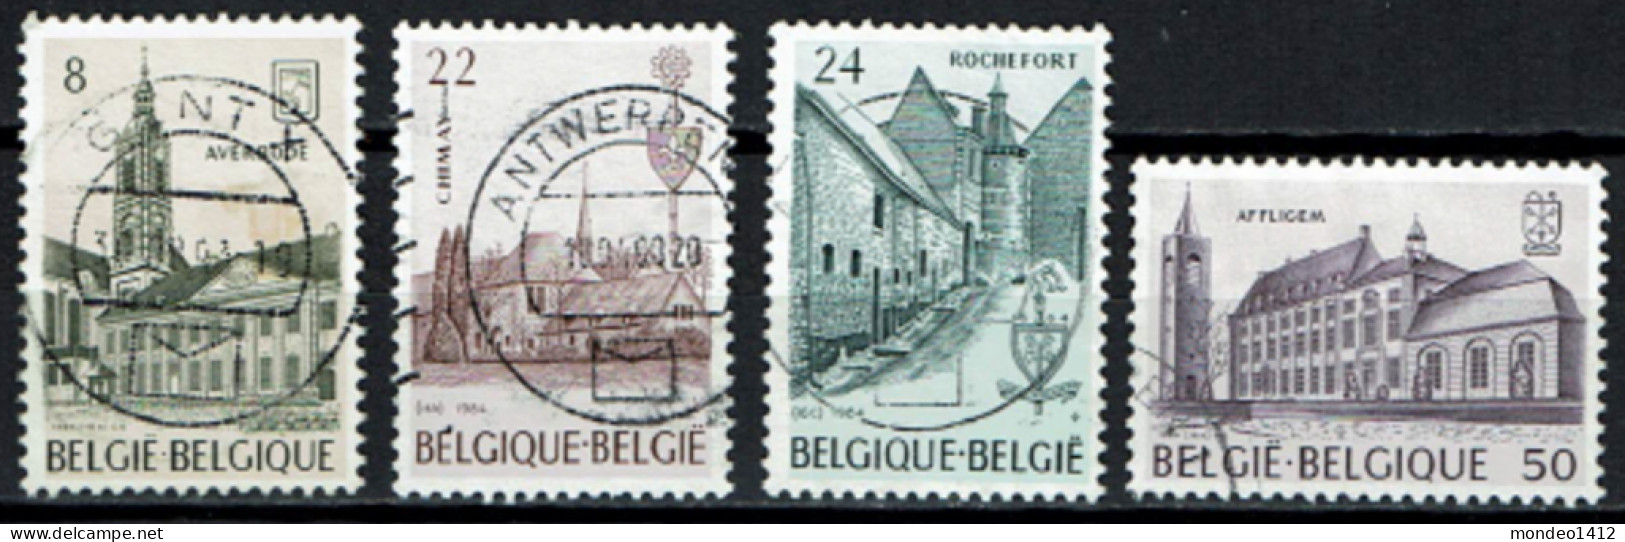 België 1984 OBP 2146/2149 - Y&T 2146/49 - Abdijen, Abbayes, Abbeys - Averbode, Chimay, Rochefort, Affligem - Usados